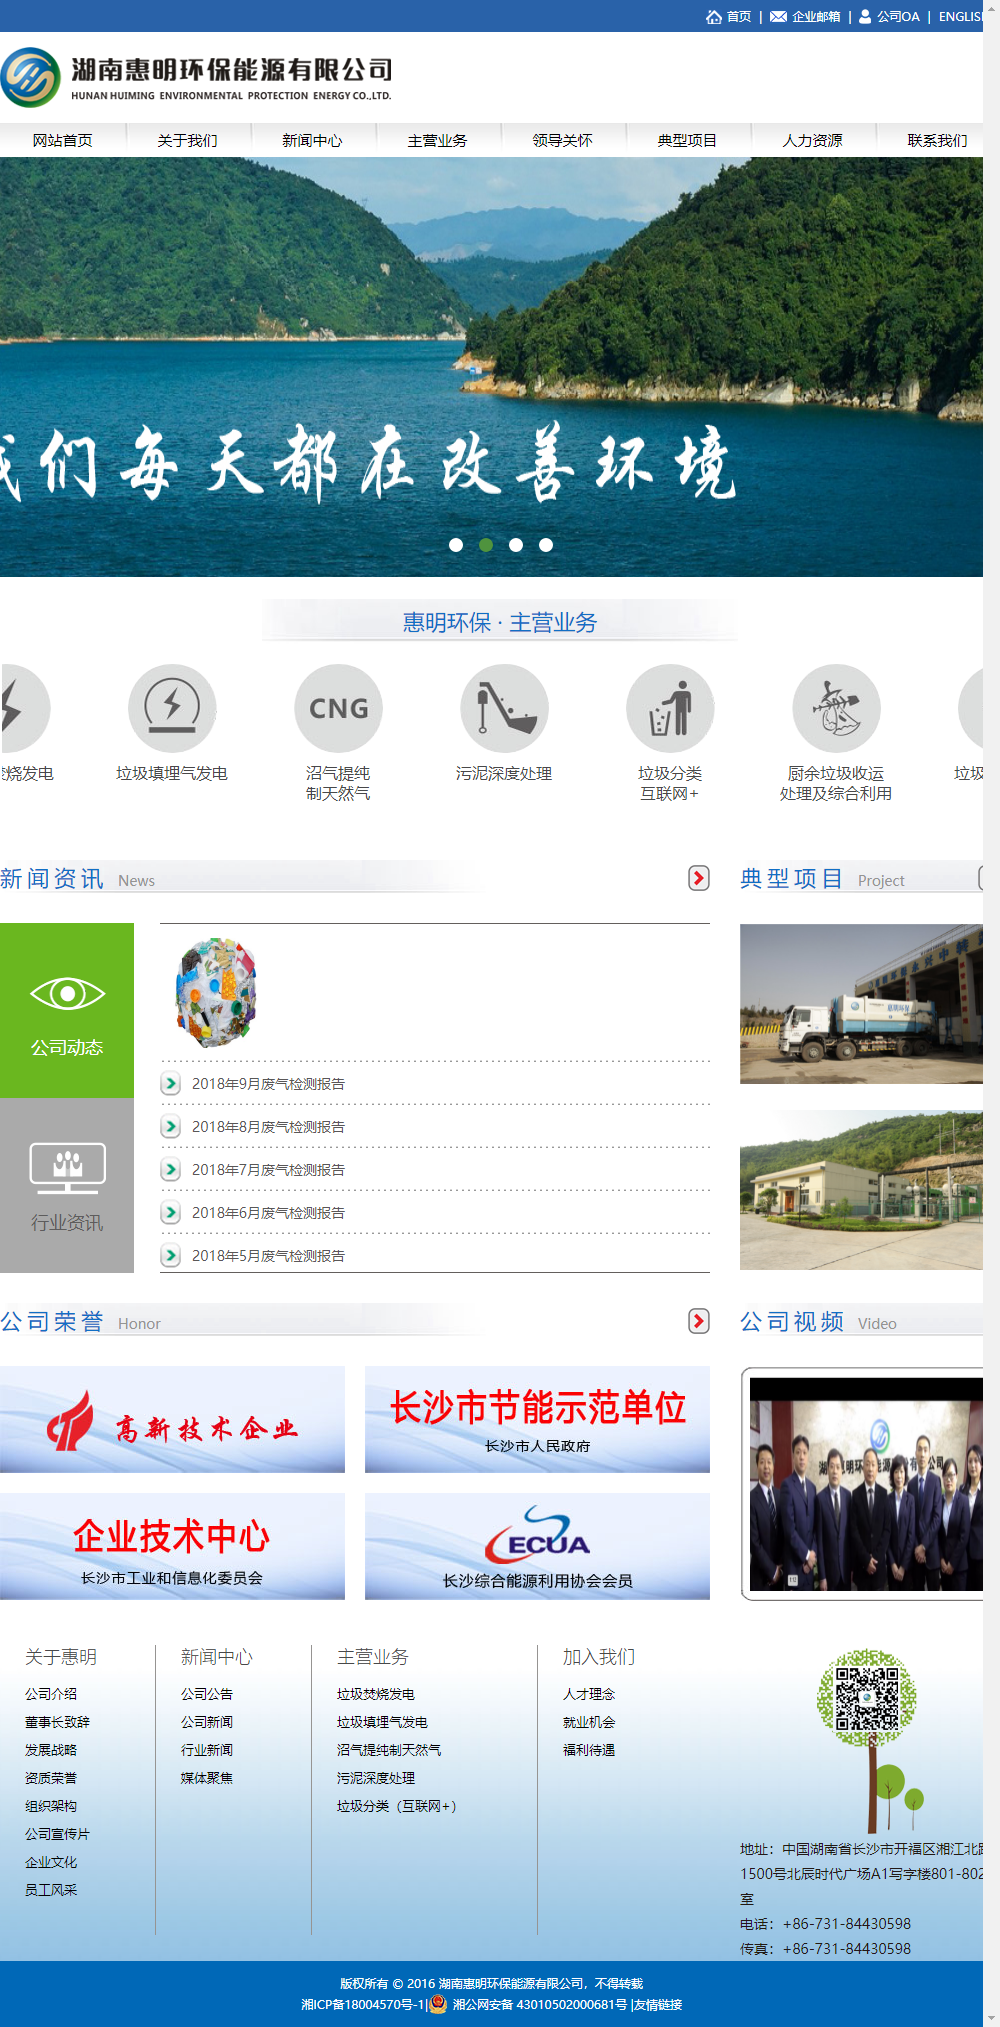 湖南惠明环保能源有限公司网站案例